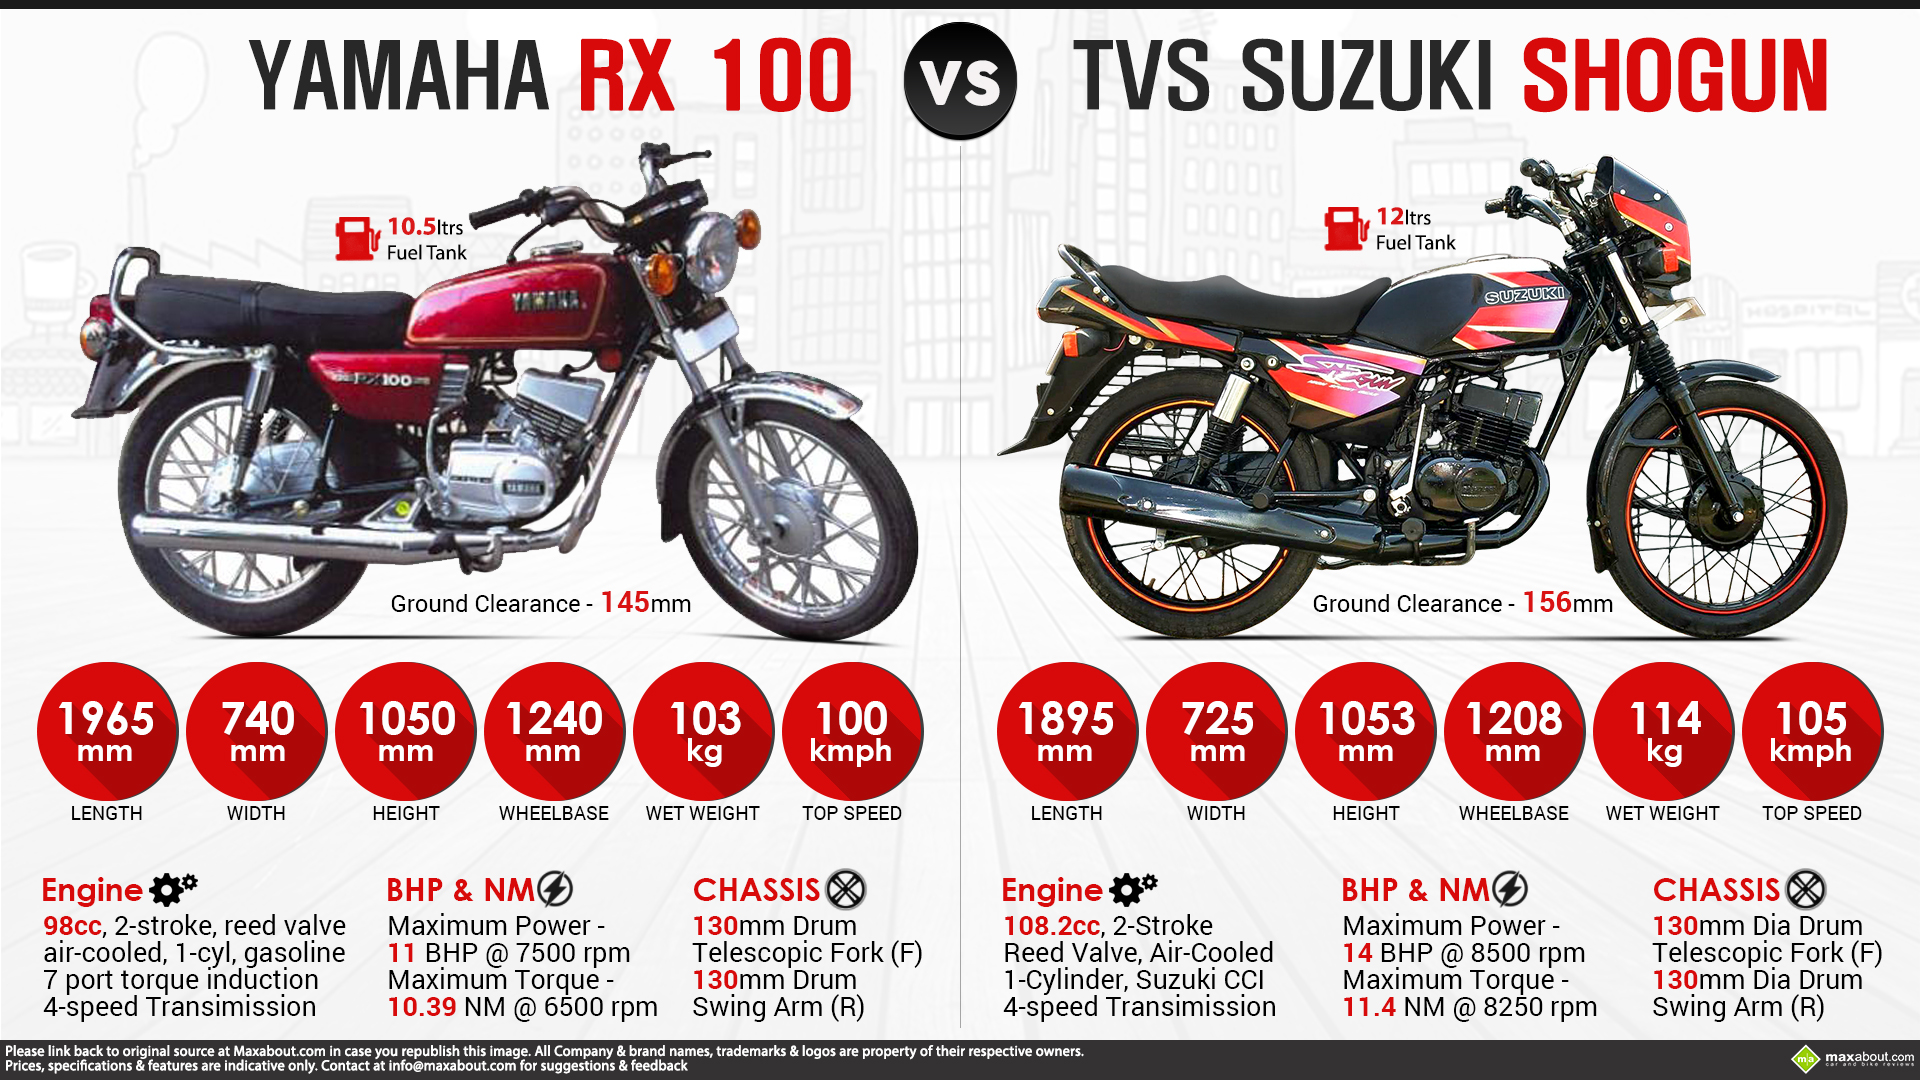 Yamaha RX 100 #10